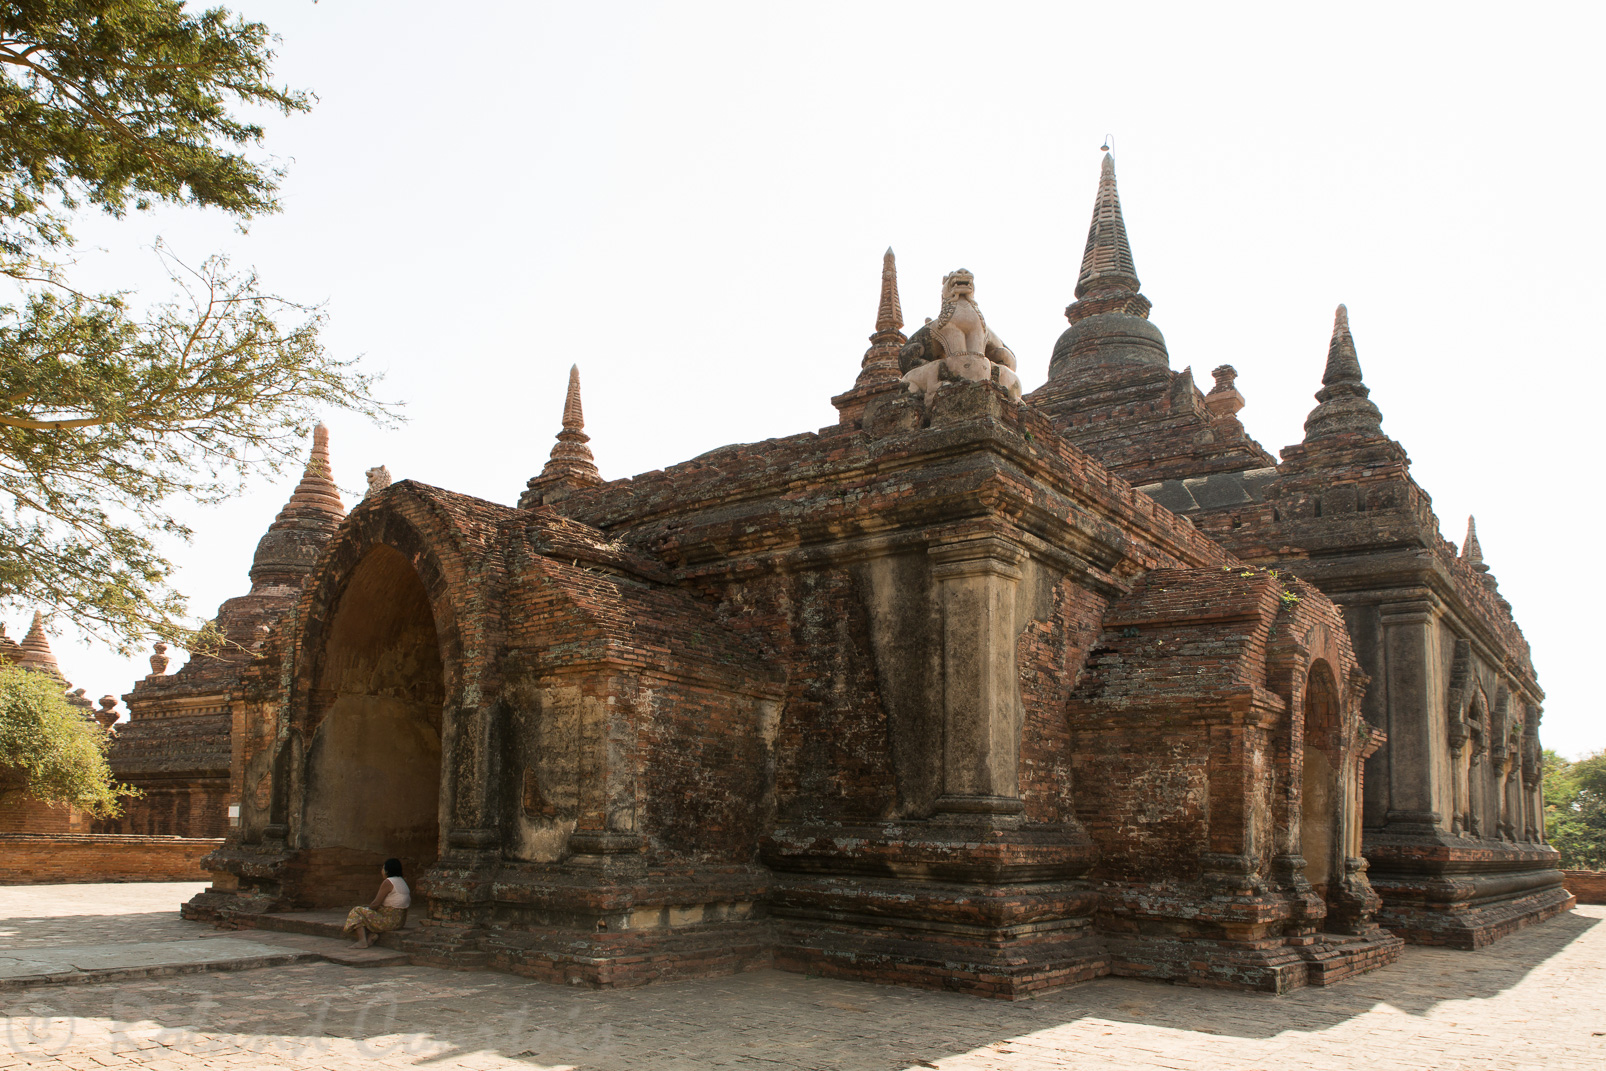 Parmi les temples les plus anciens de Bagan, l’ Abeyadana est composé de deux blocs carrés.